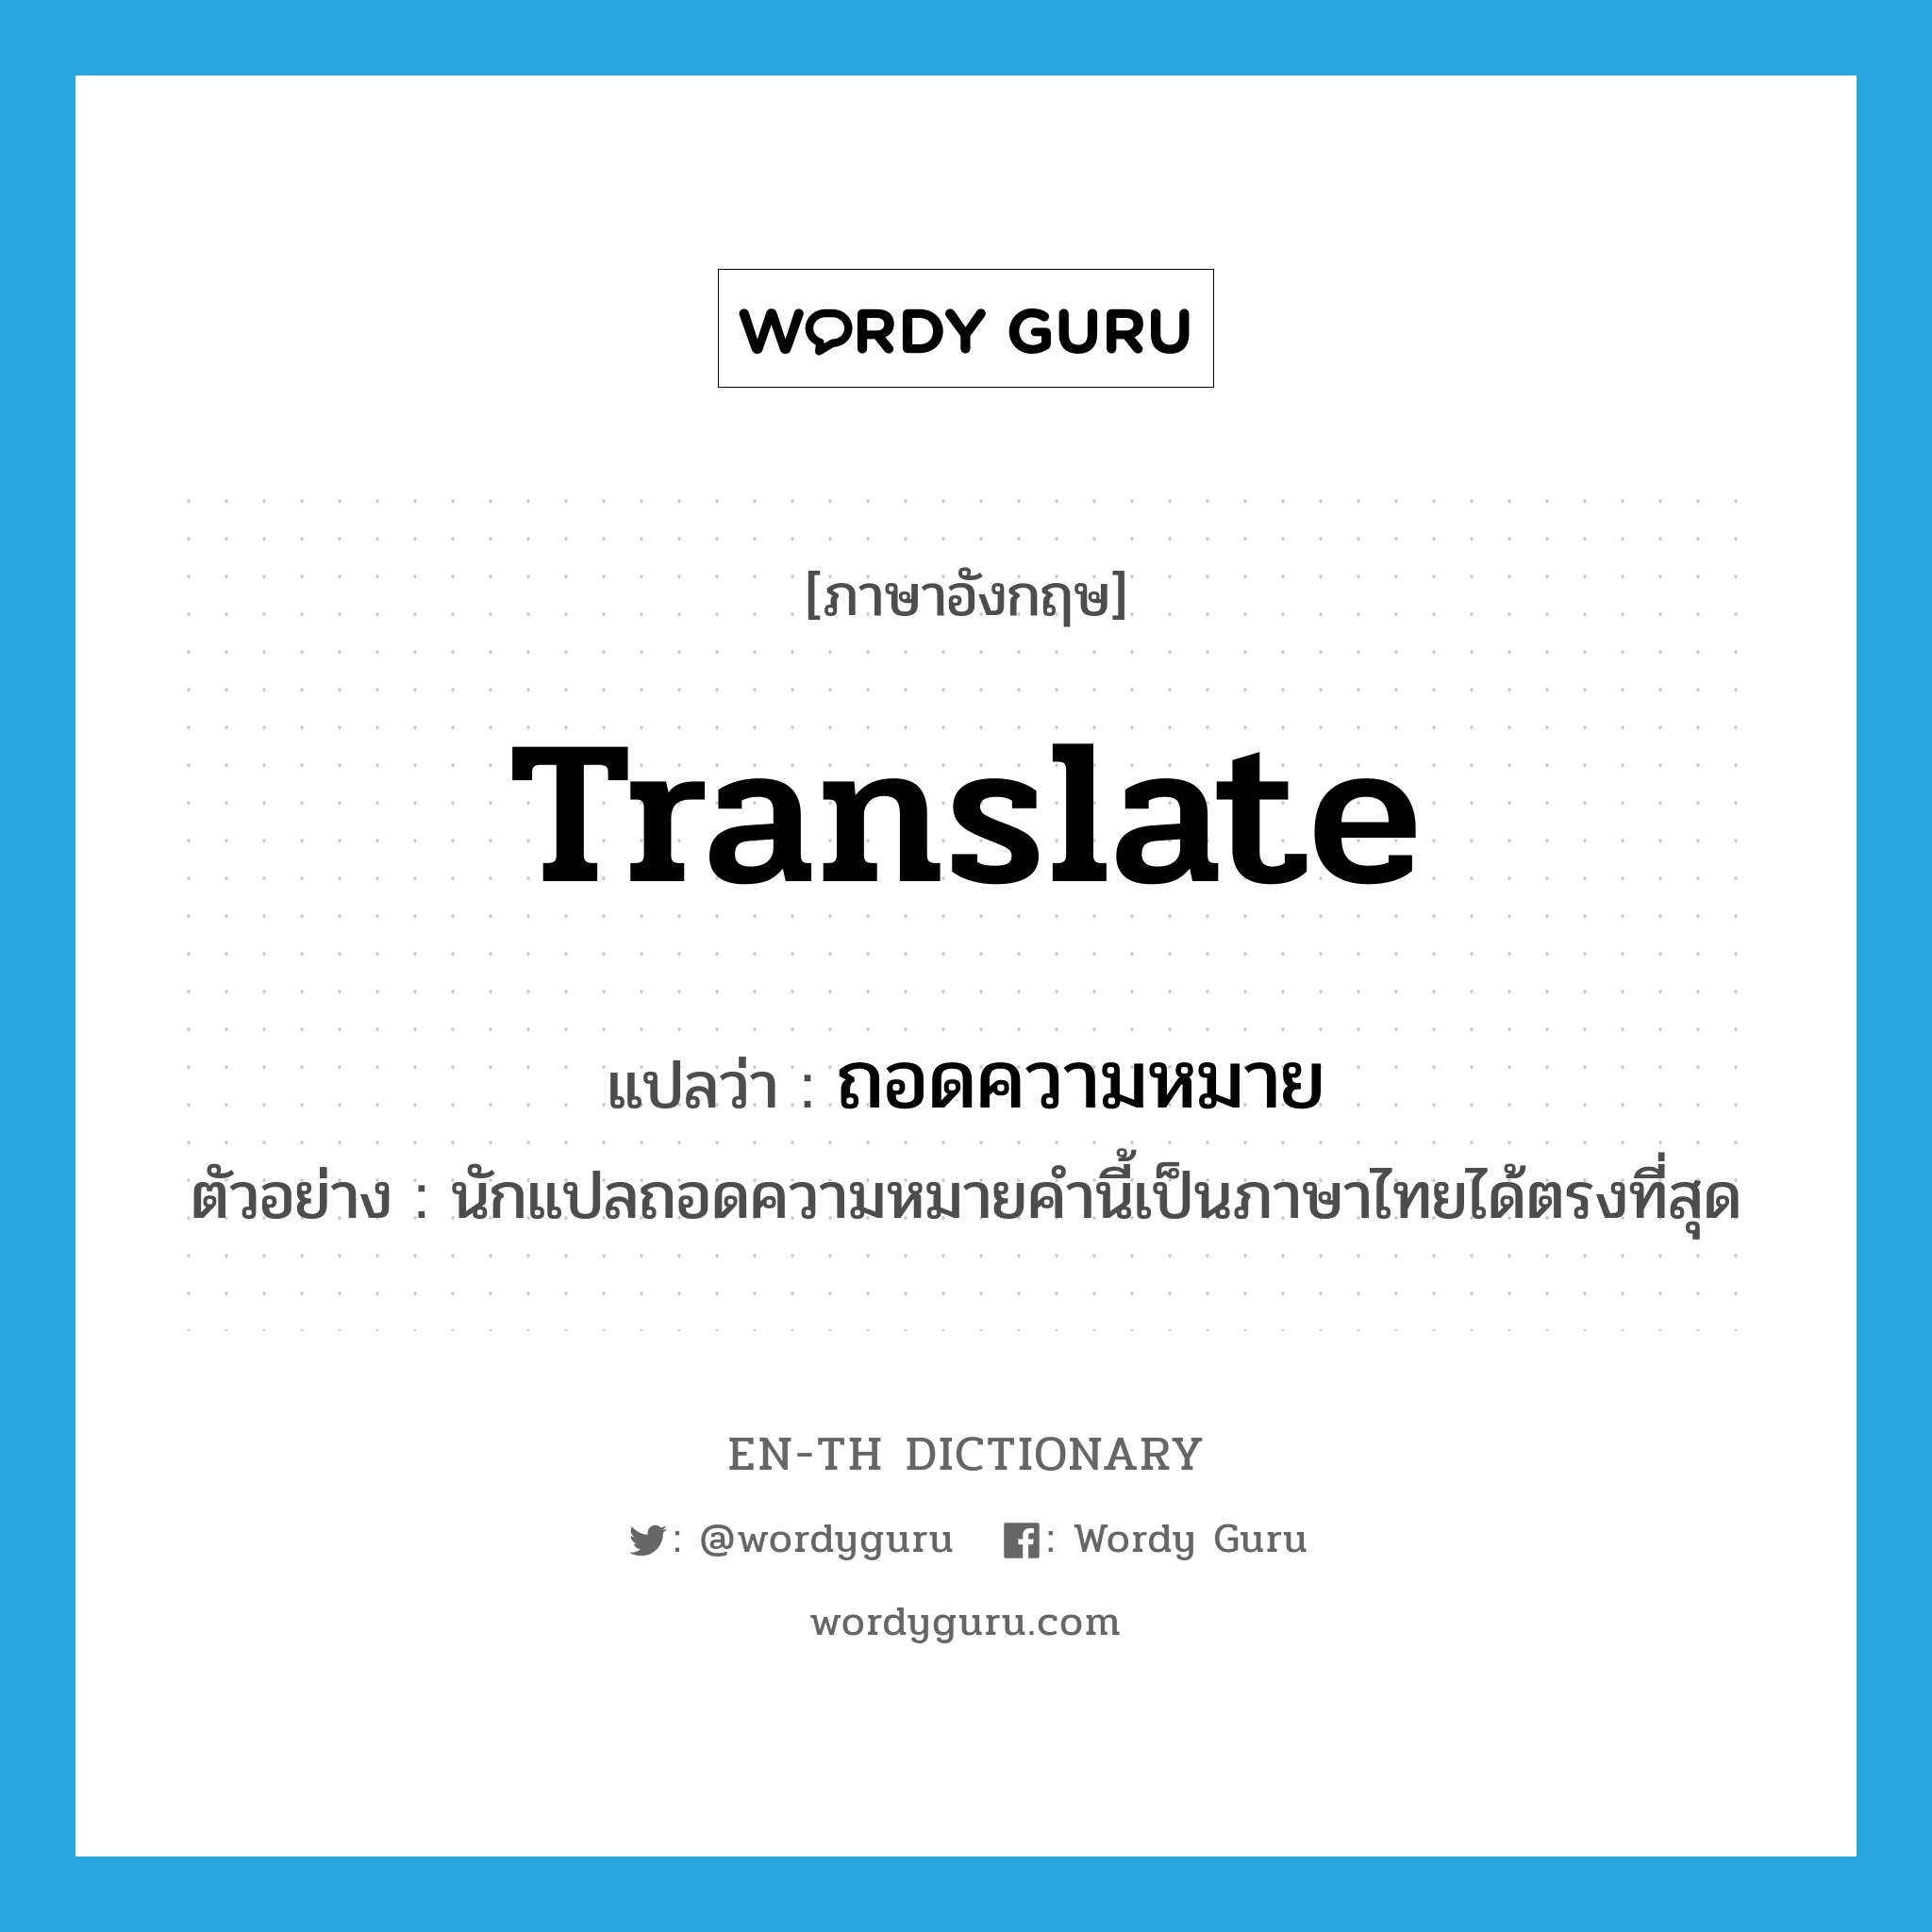 ถอดความหมาย ภาษาอังกฤษ?, คำศัพท์ภาษาอังกฤษ ถอดความหมาย แปลว่า translate ประเภท V ตัวอย่าง นักแปลถอดความหมายคำนี้เป็นภาษาไทยได้ตรงที่สุด หมวด V